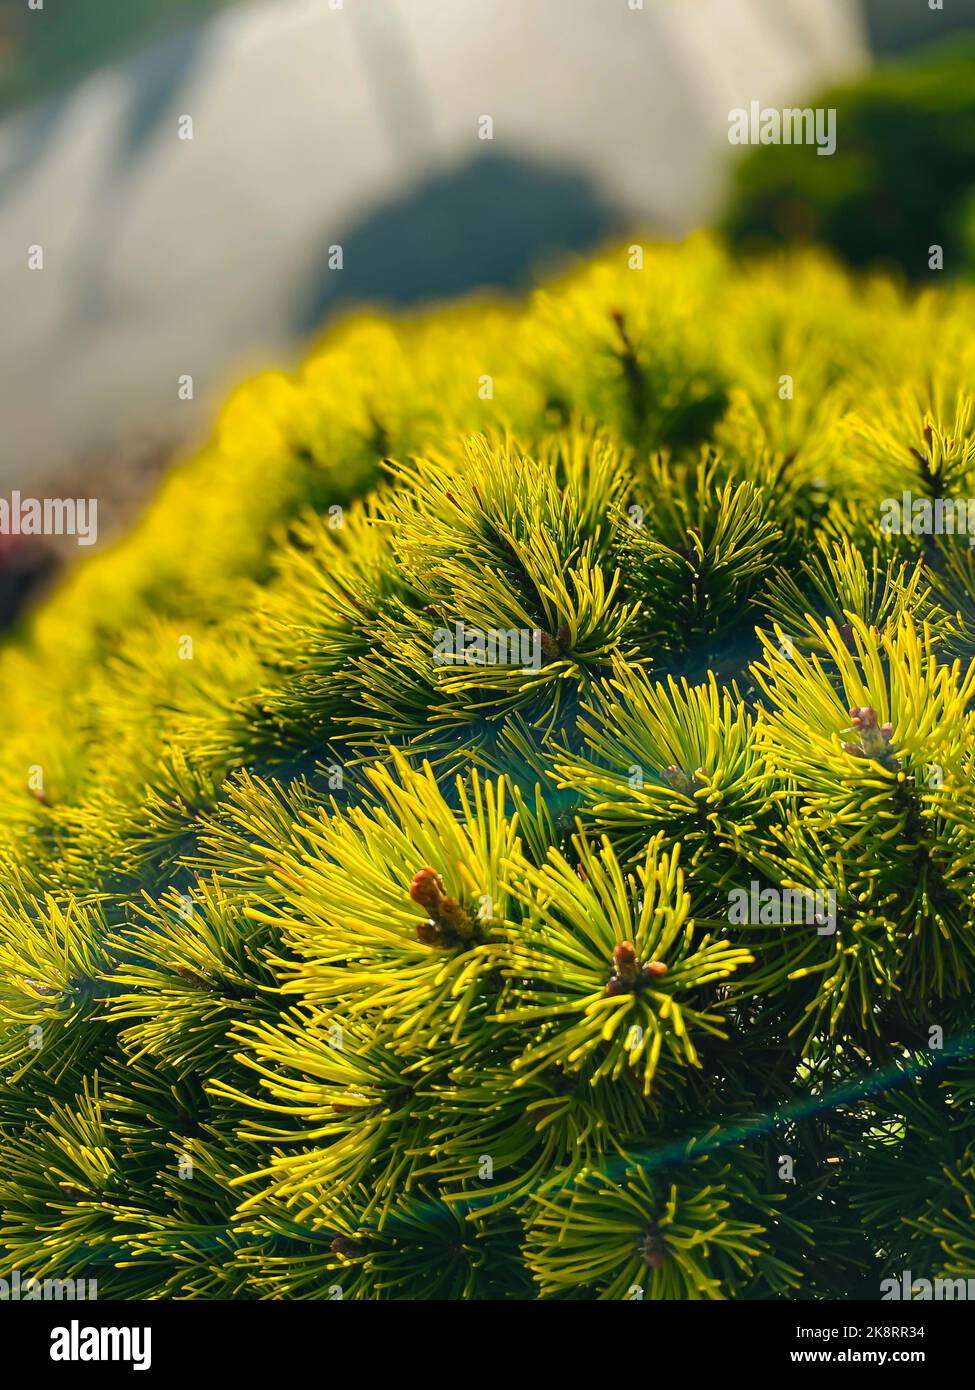 A Selective focus of Mountain pine branches o a sunny day Stock Photo